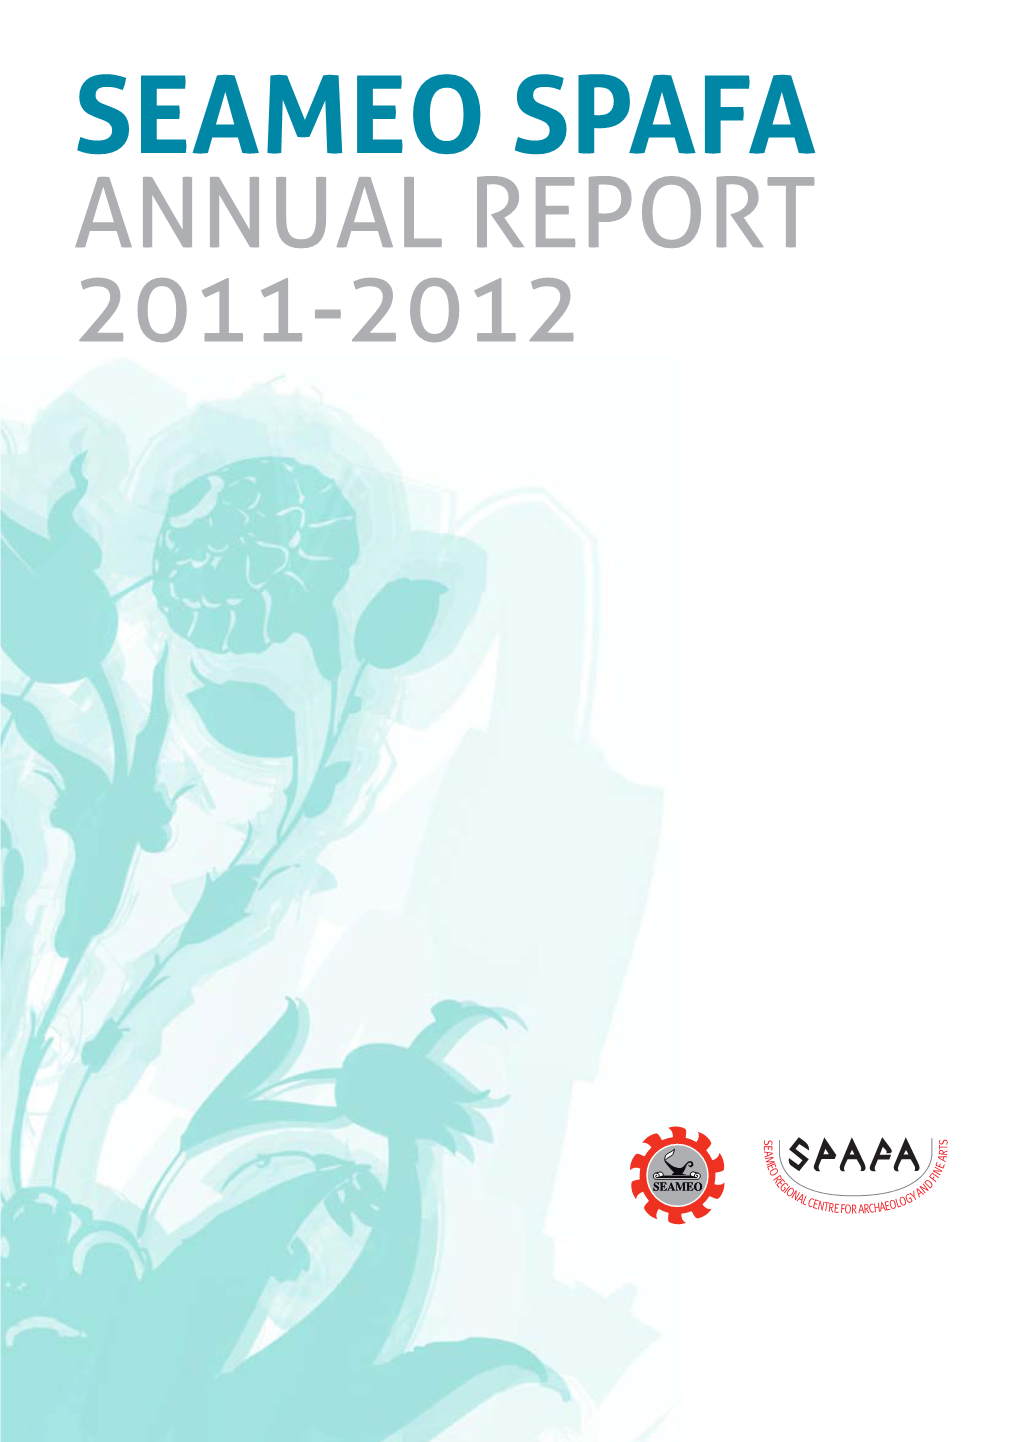 ANNUAL REPORT 2011-2012 2 SEAMEO SPAFA Annual Report 2011-2012